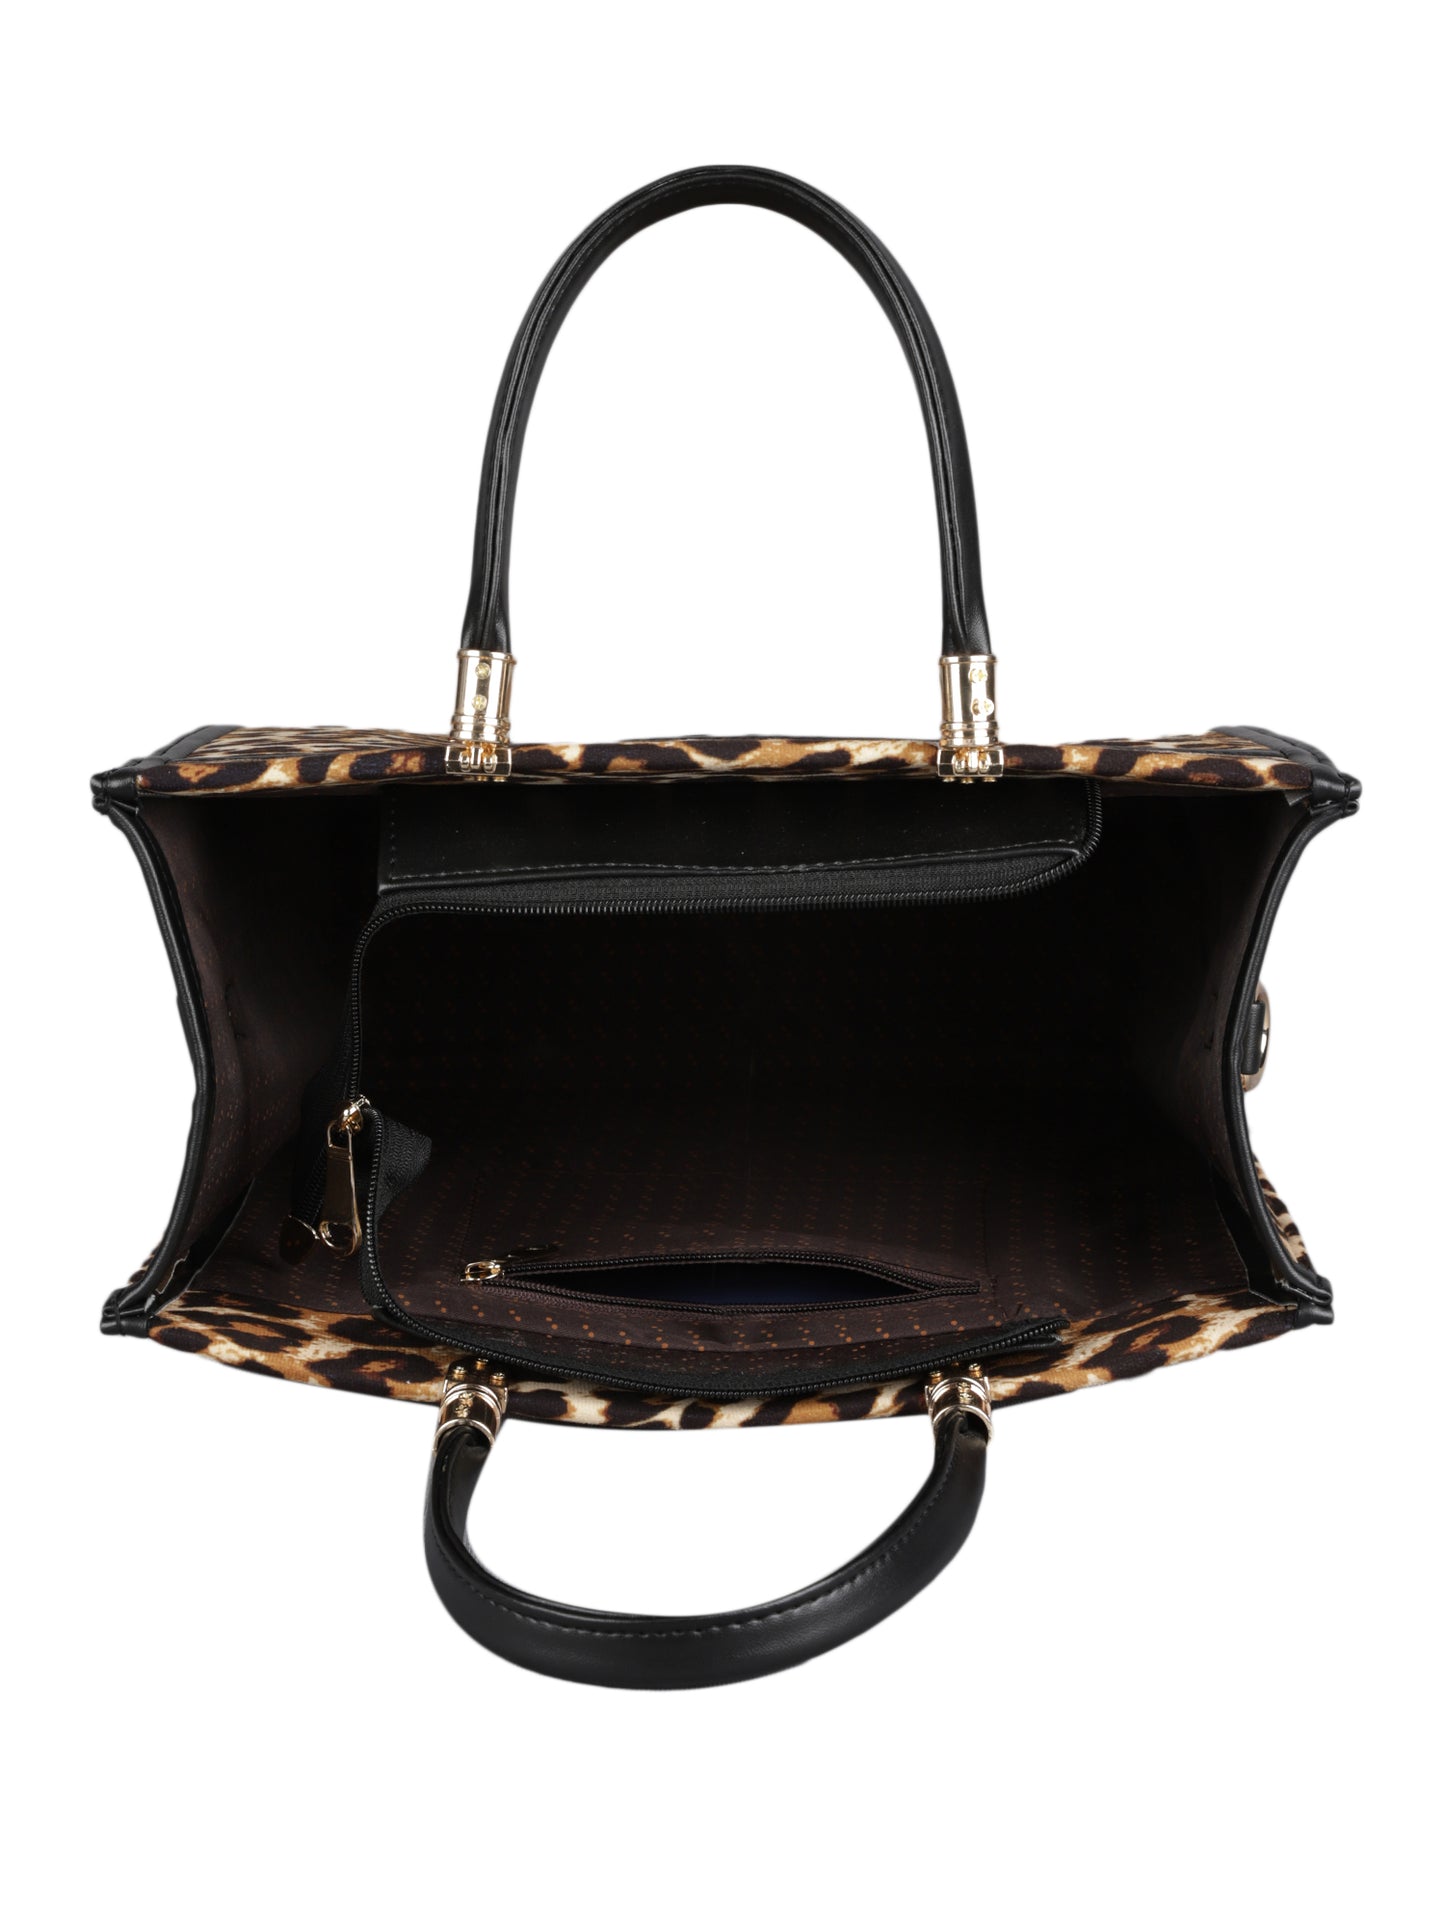 MINI WESST Women's Beige Handbags(MWHB003TIG)